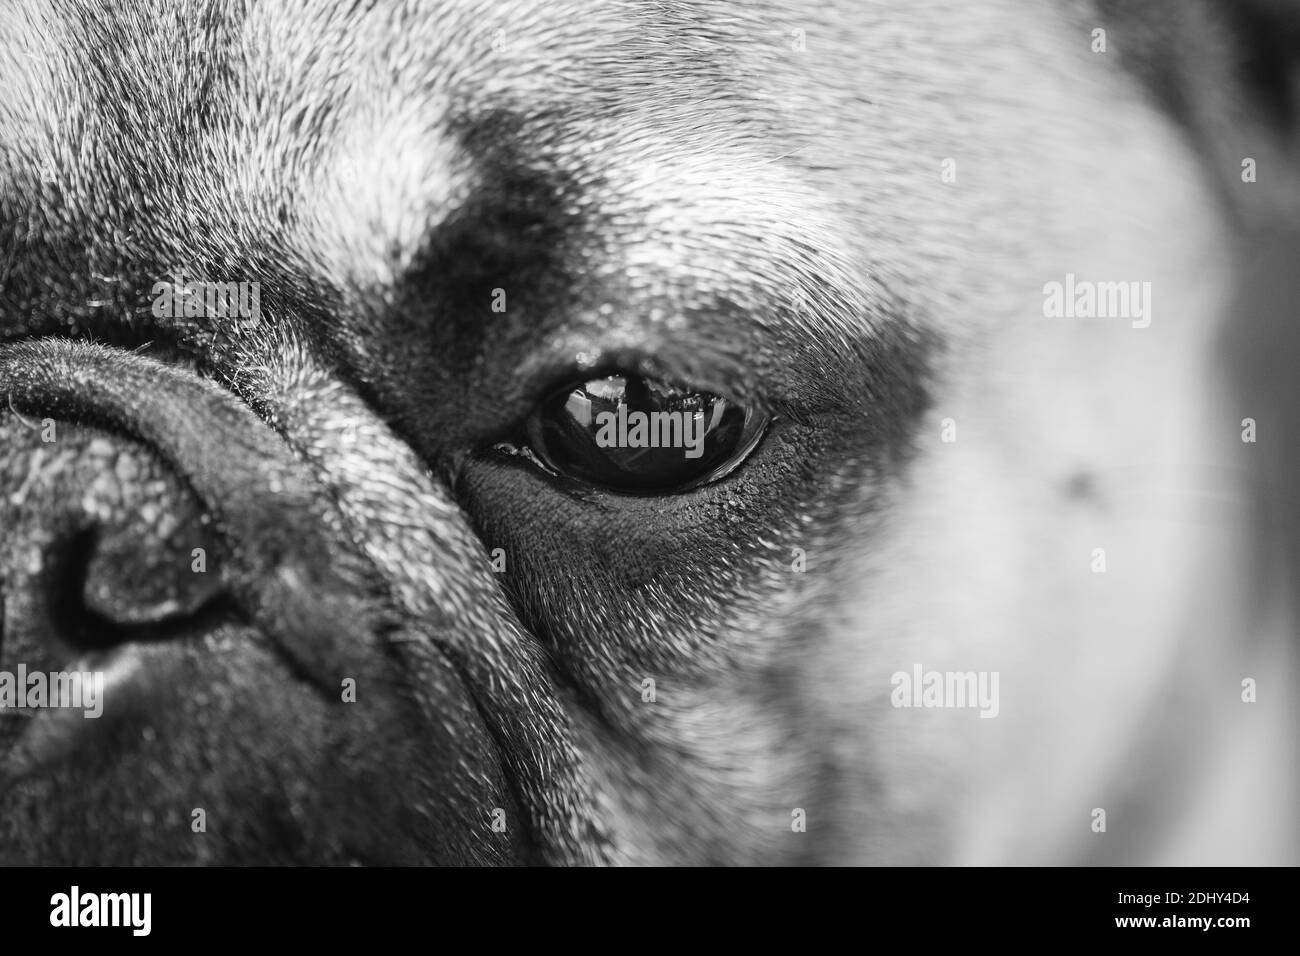 Nahaufnahme Auge und Nase Hund Französisch Bulldog. Schwarz-weiß Porträt  Stockfotografie - Alamy